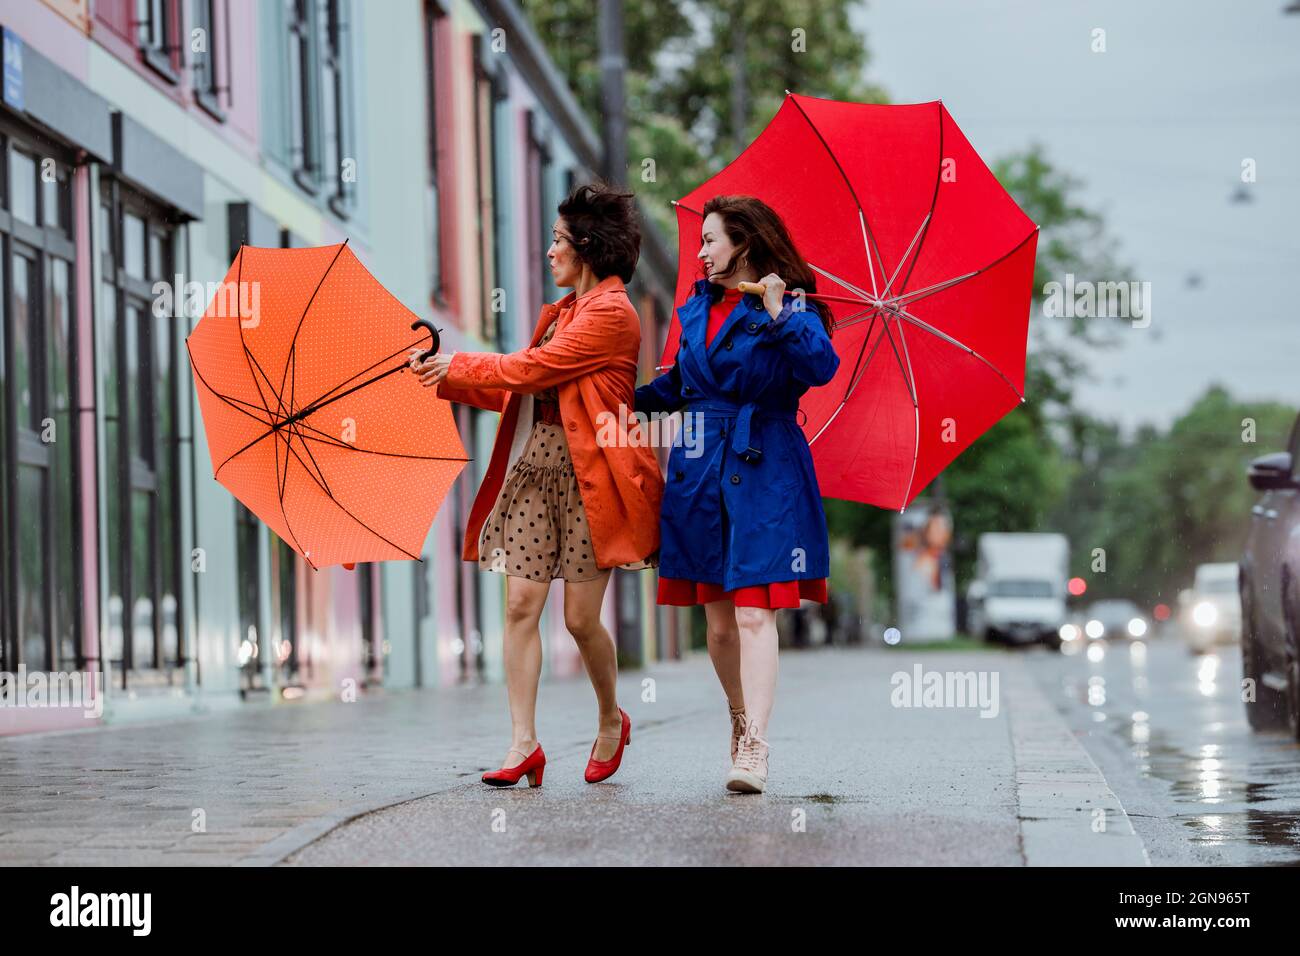 Femme souriante regardant une amie qui se débat avec un parapluie Banque D'Images